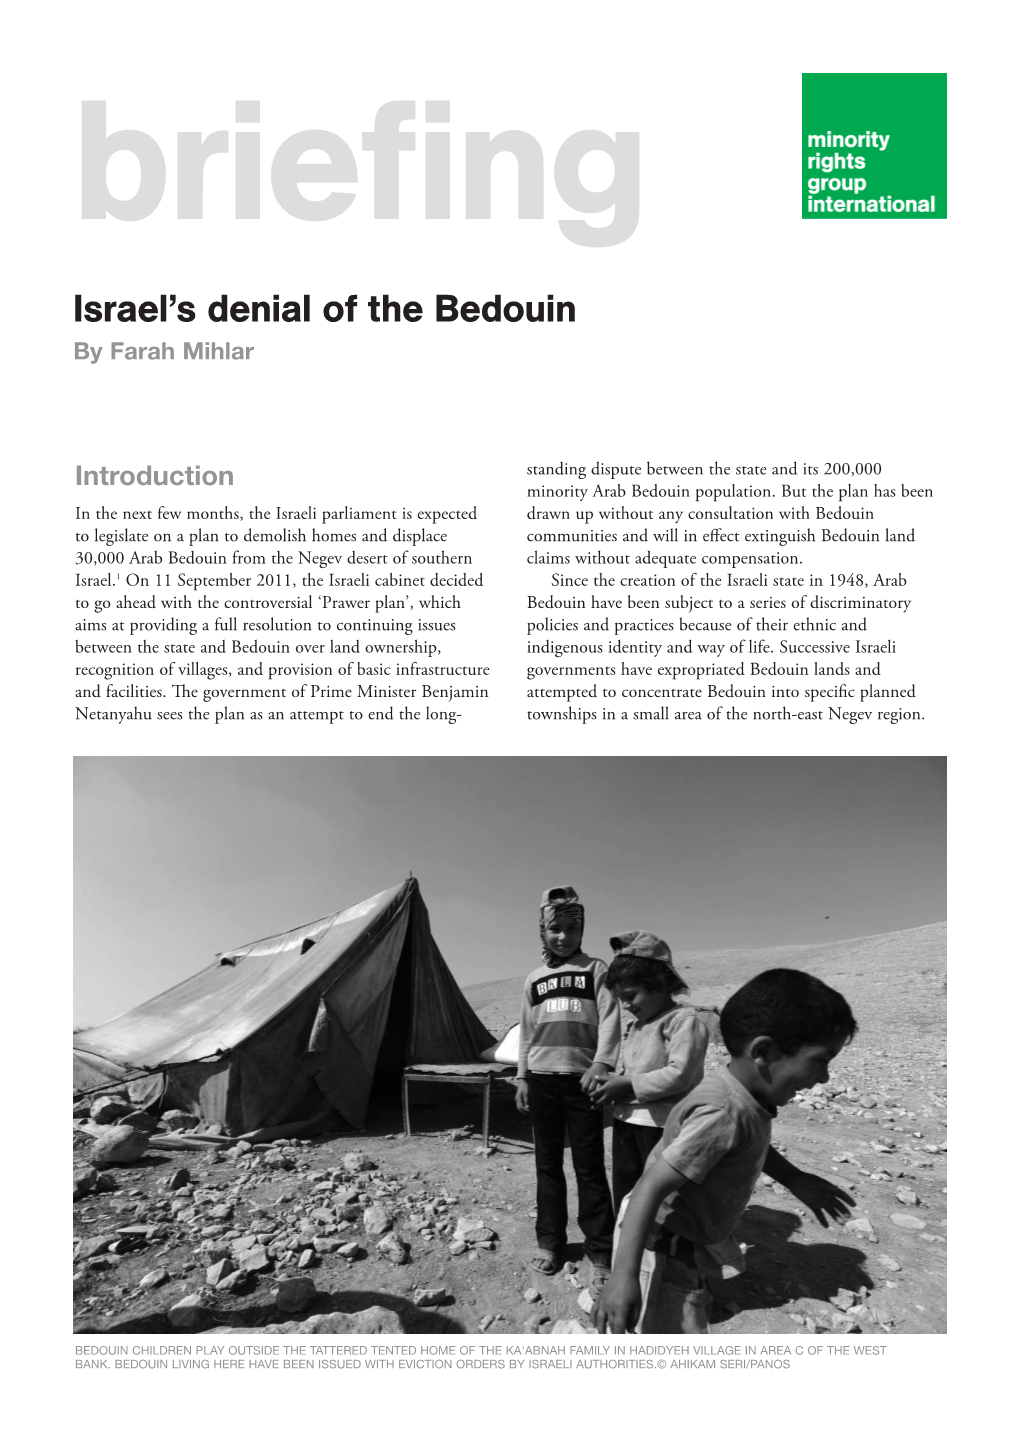 Israel's Denial of the Bedouin